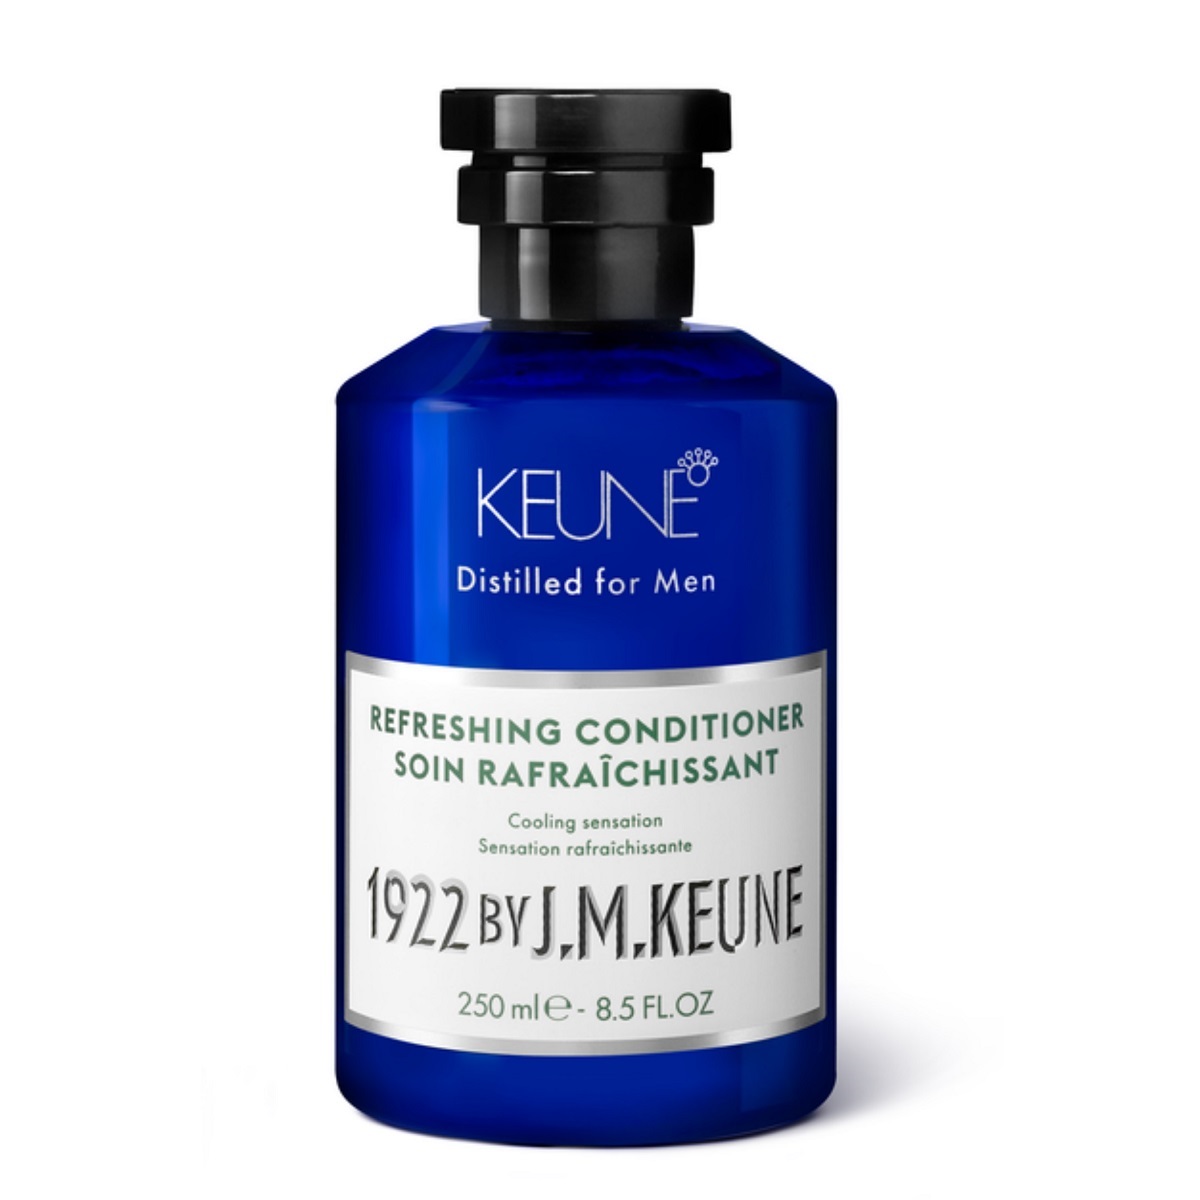 Keune Освежающий кондиционер Refreshing Conditioner, 250 мл (Keune, 1922 by J.M. Keune) tummydrops леденцы с перечной мятой 18 леденцов